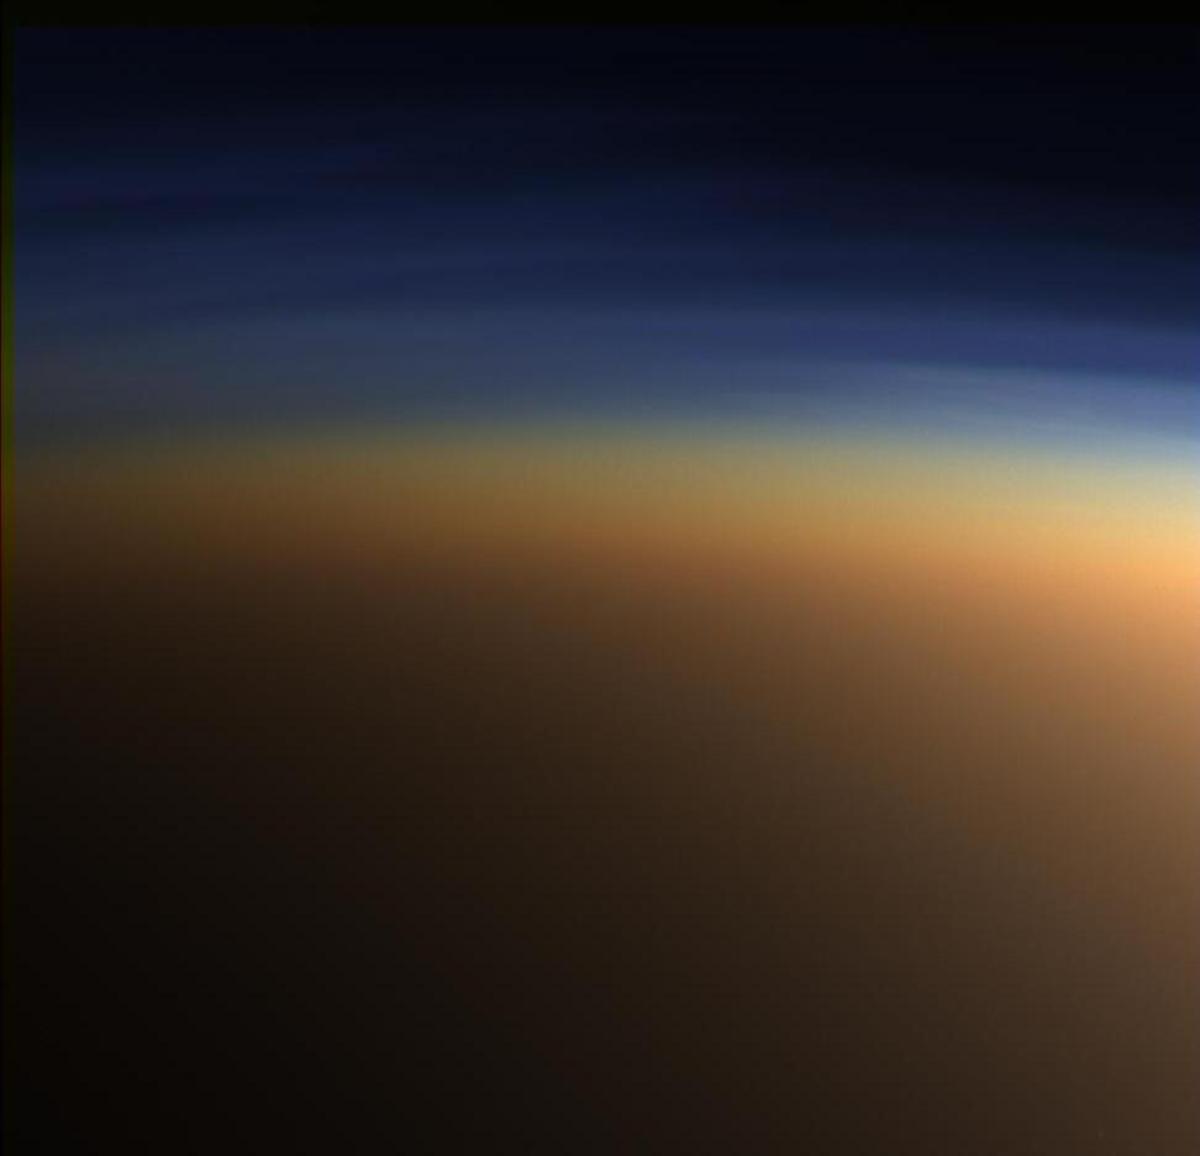 Moléculas orgánicas líquidas en la Tierra son minerales sólidos y helados en Titán, la luna de Saturno